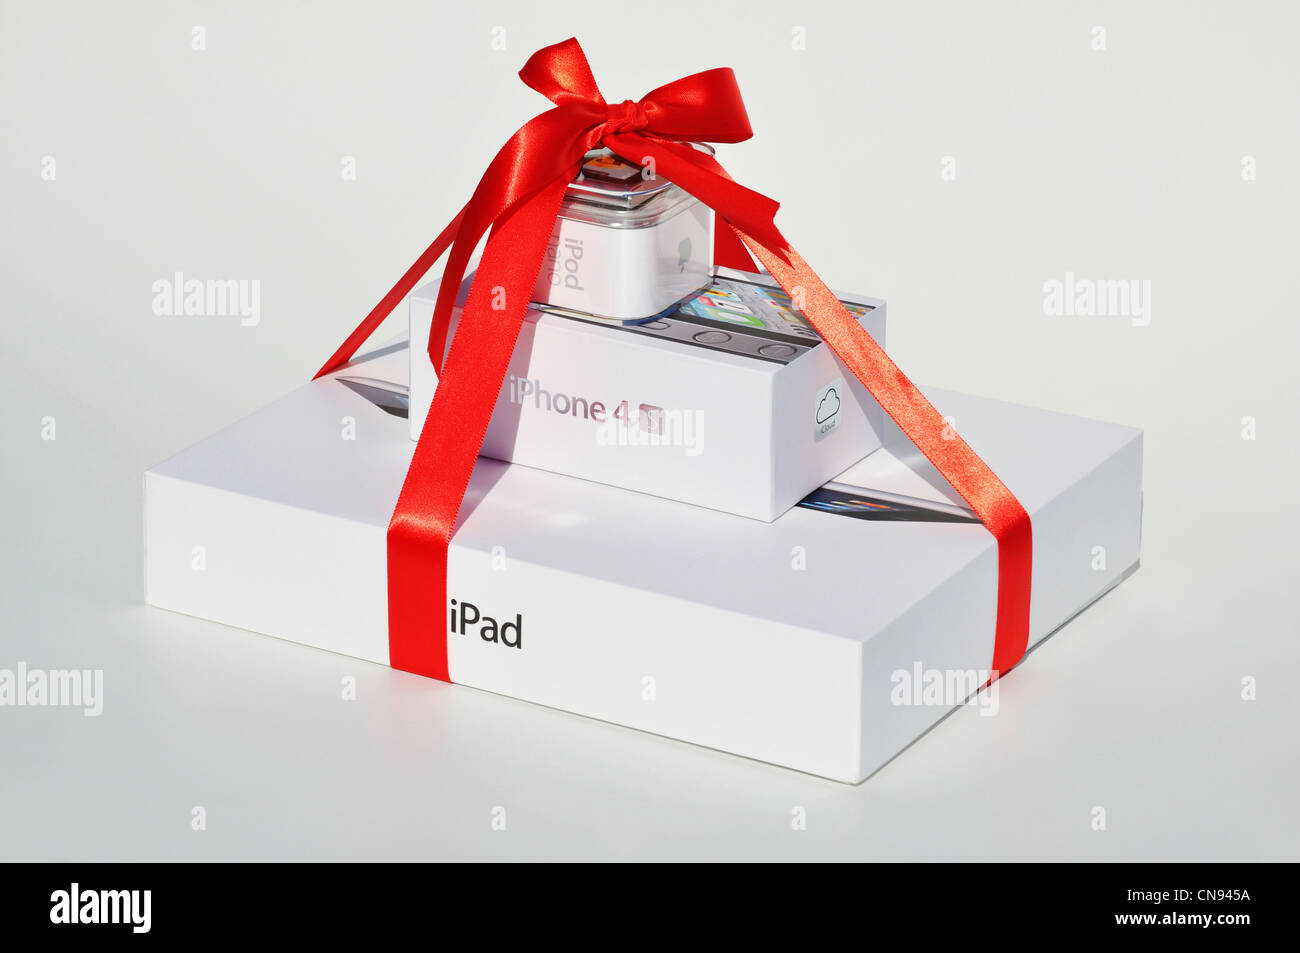 El regalo perfecto: el iPod Nano, iPhone & iPad Fotografía de stock - Alamy